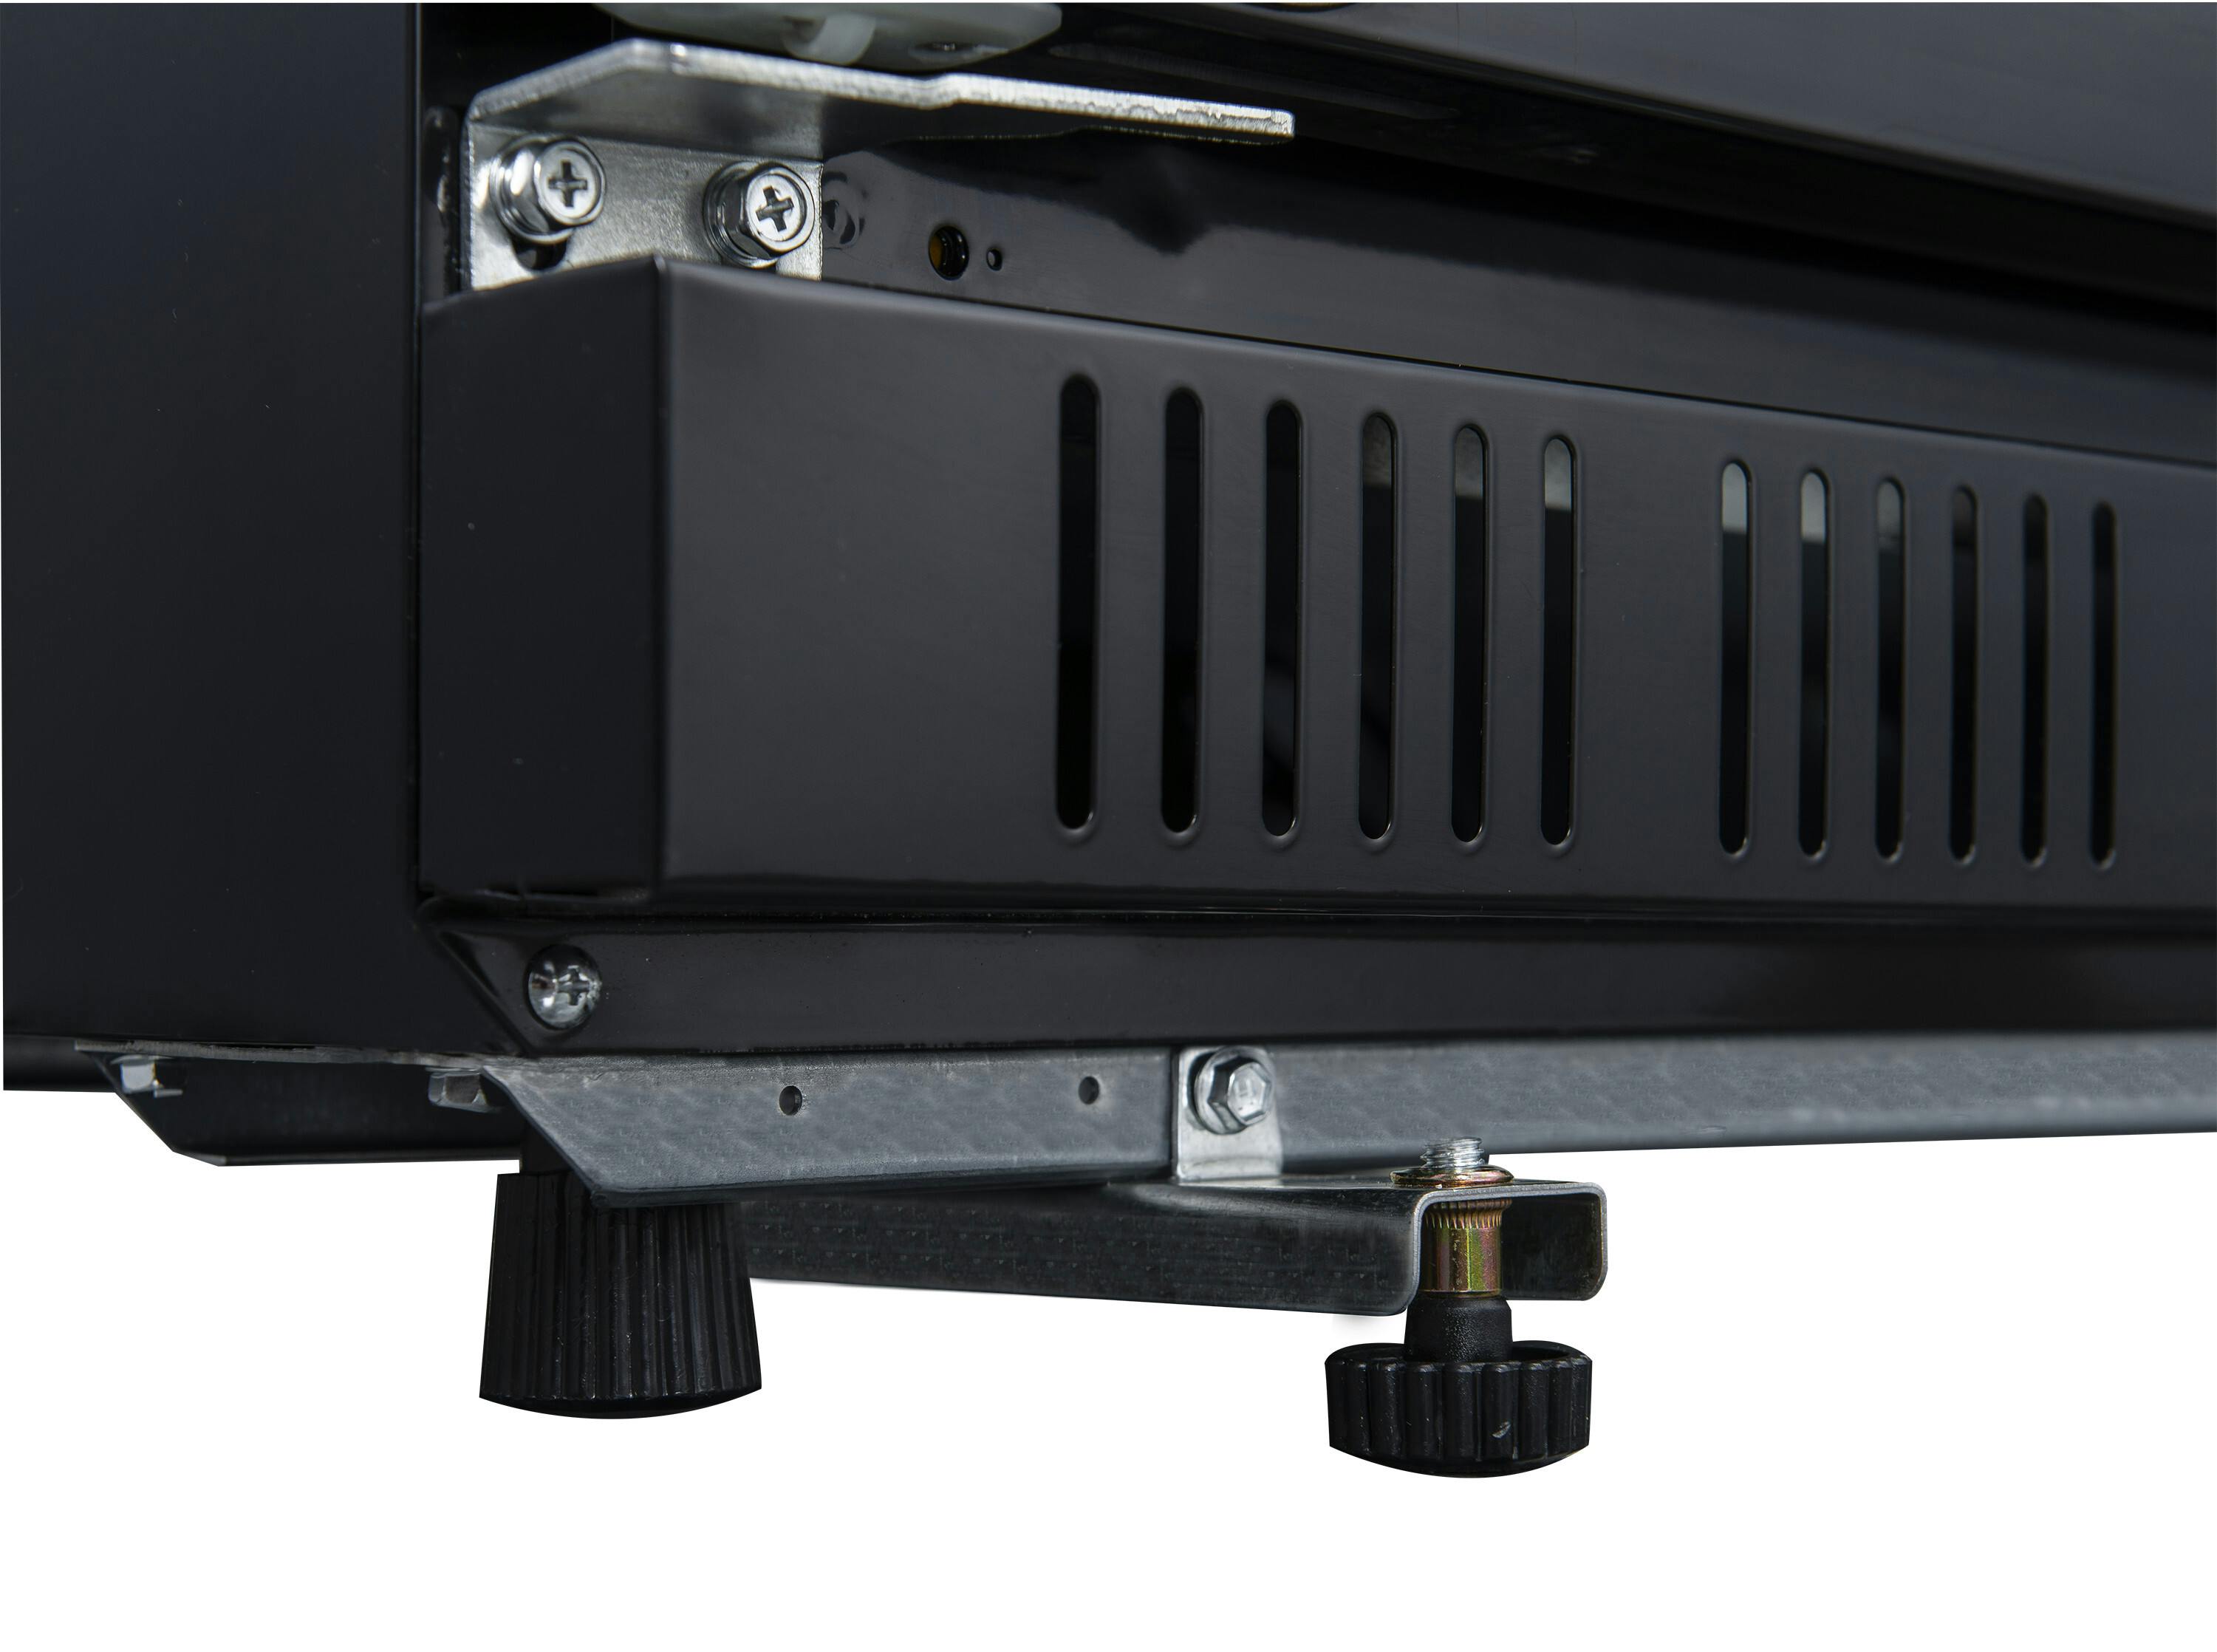 METRO Professional Glastürkühlschrank GSC2360CB, Aluminium / Edelstahl, 62 x  64.6 x 193.5 cm, 347 L, Umluftkühlung, 180 W, mit Schloss, schwarz